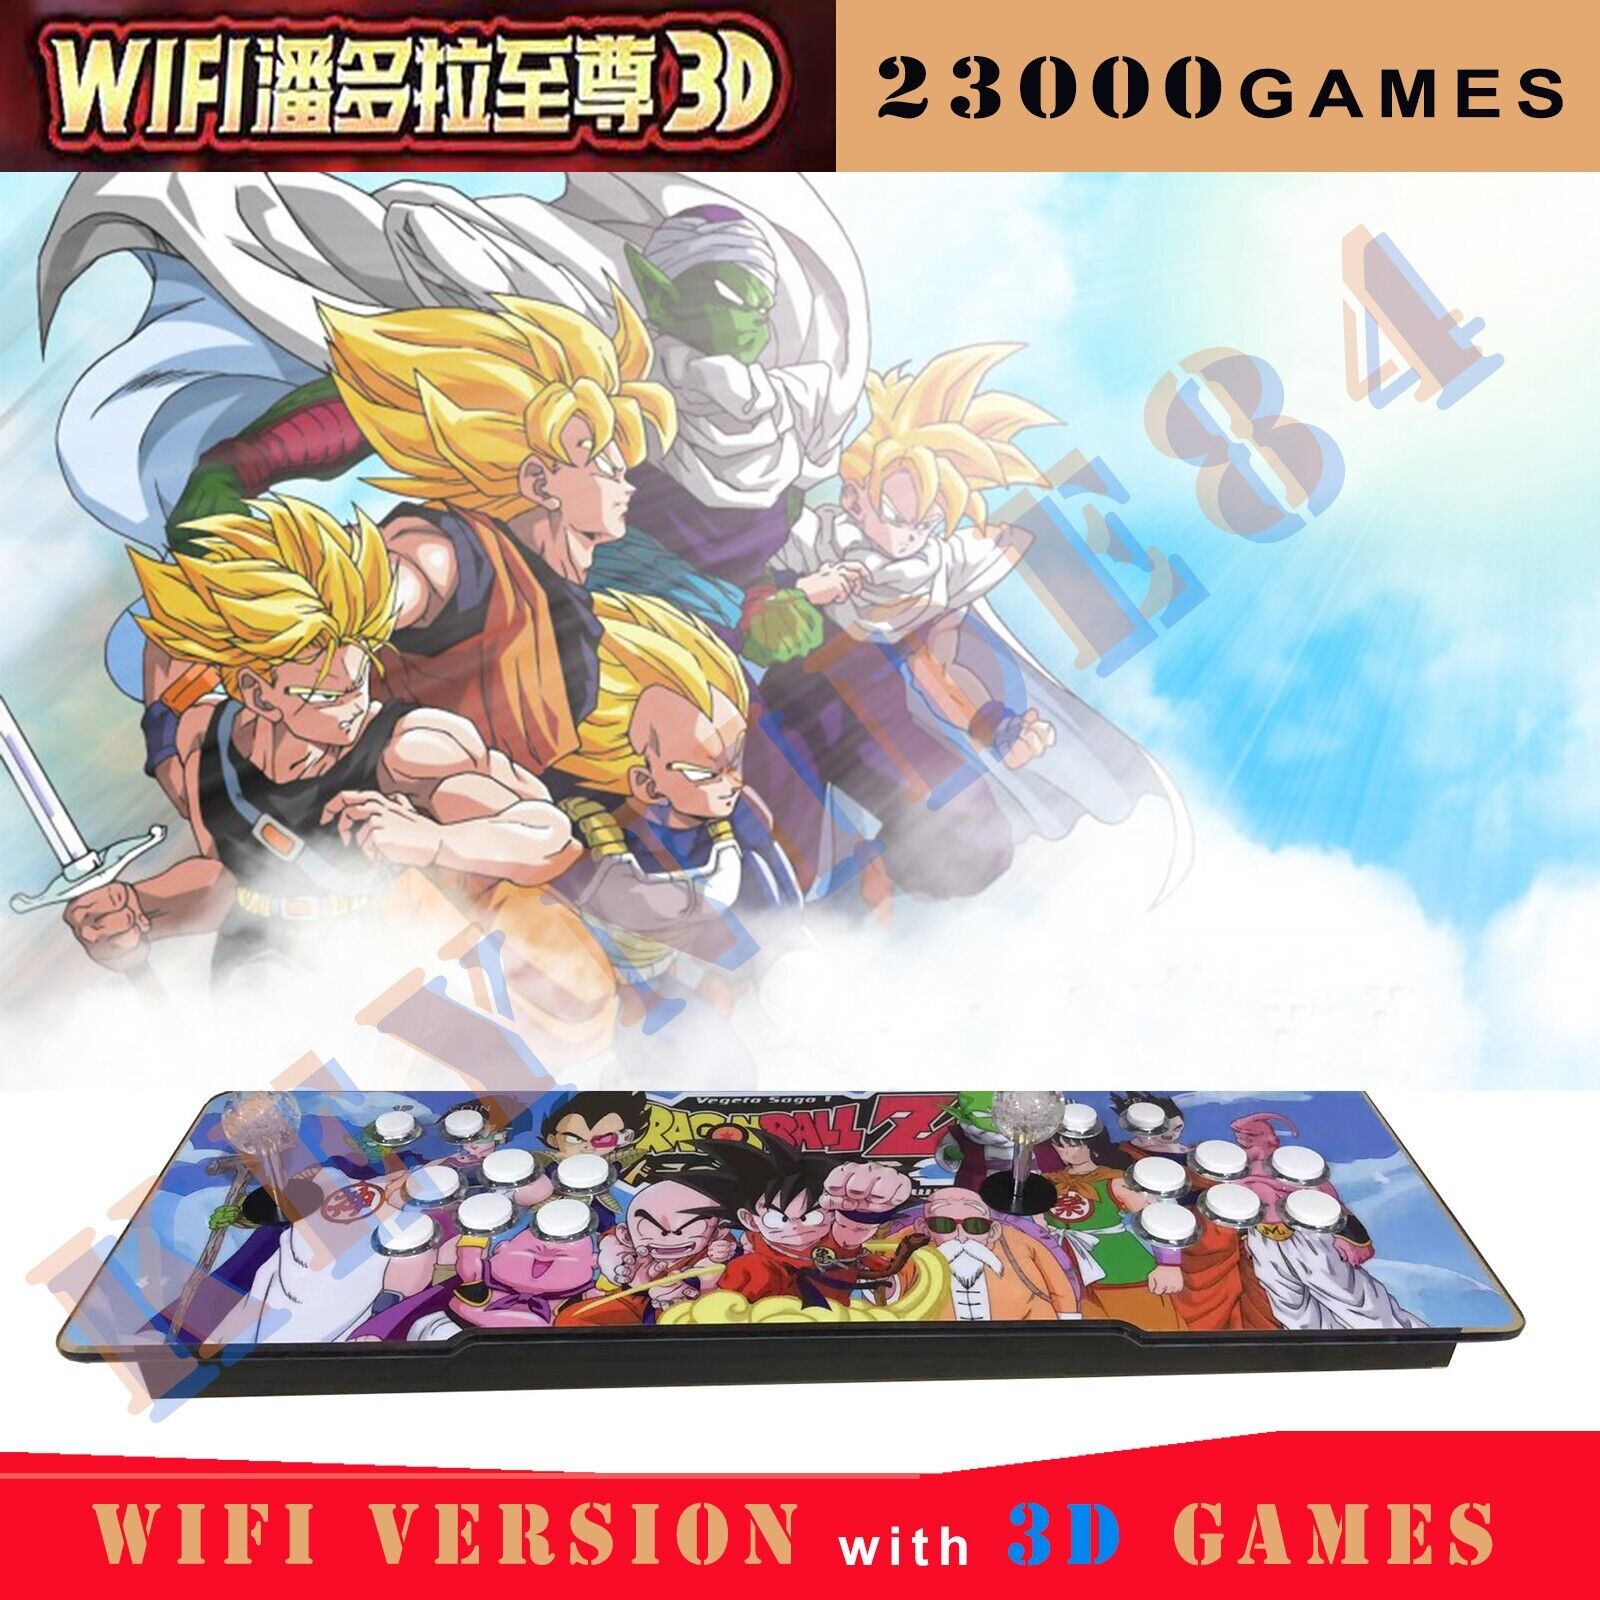 NEW Double Stick Pandora\'s Box 23000 Games 3D WiFi Retro Video Arcade Console